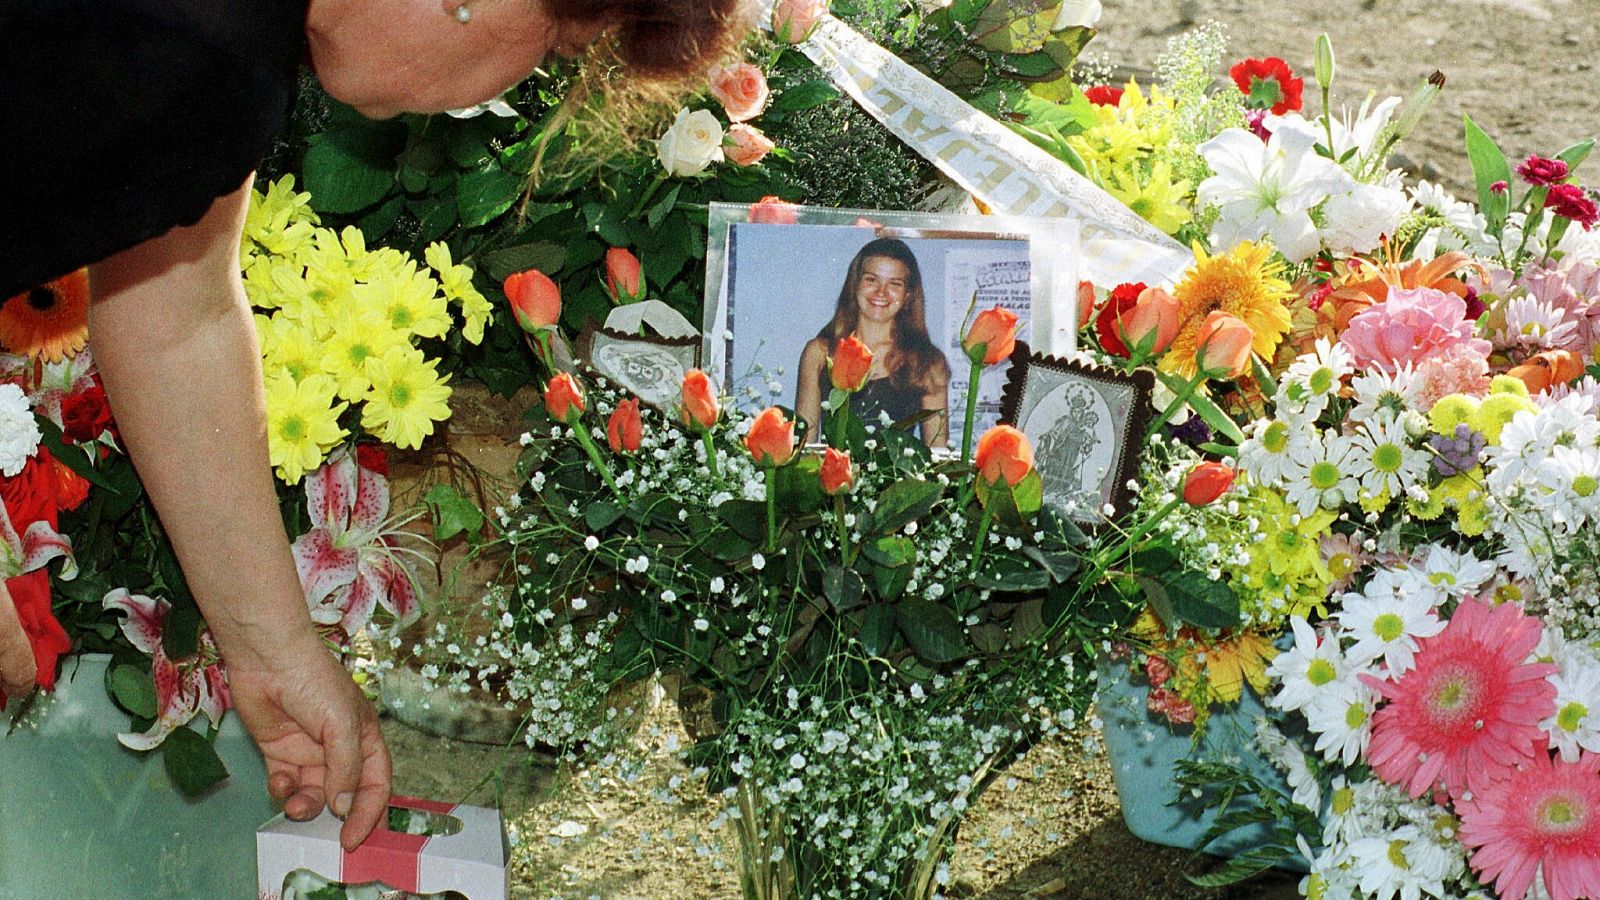 Este 9 de octubre se cumplen 20 años del asesinato de Rocío Wanninkhof...Un caso mediático que tardó cuatro años en resolverse y por el que Dolores Vázquez pasó un año y medio en la cárcel, condenada por error. El verdadero autor, un exconvicto britá